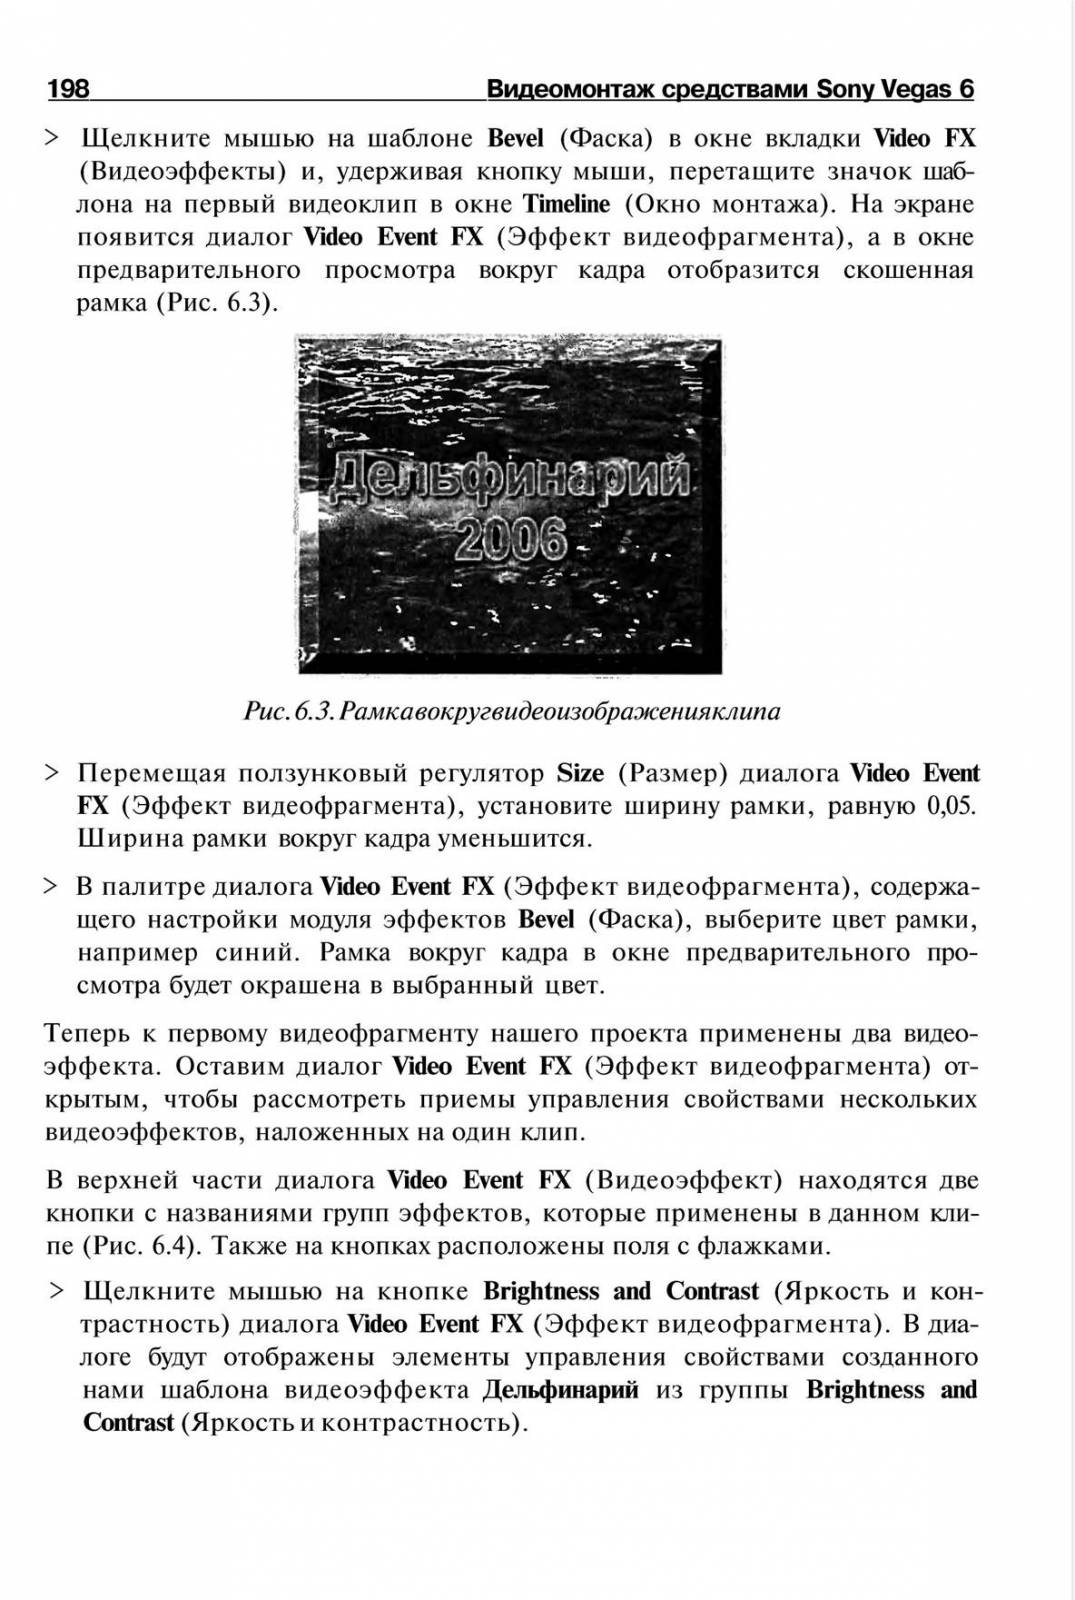 http://redaktori-uroki.3dn.ru/_ph/14/188730244.jpg